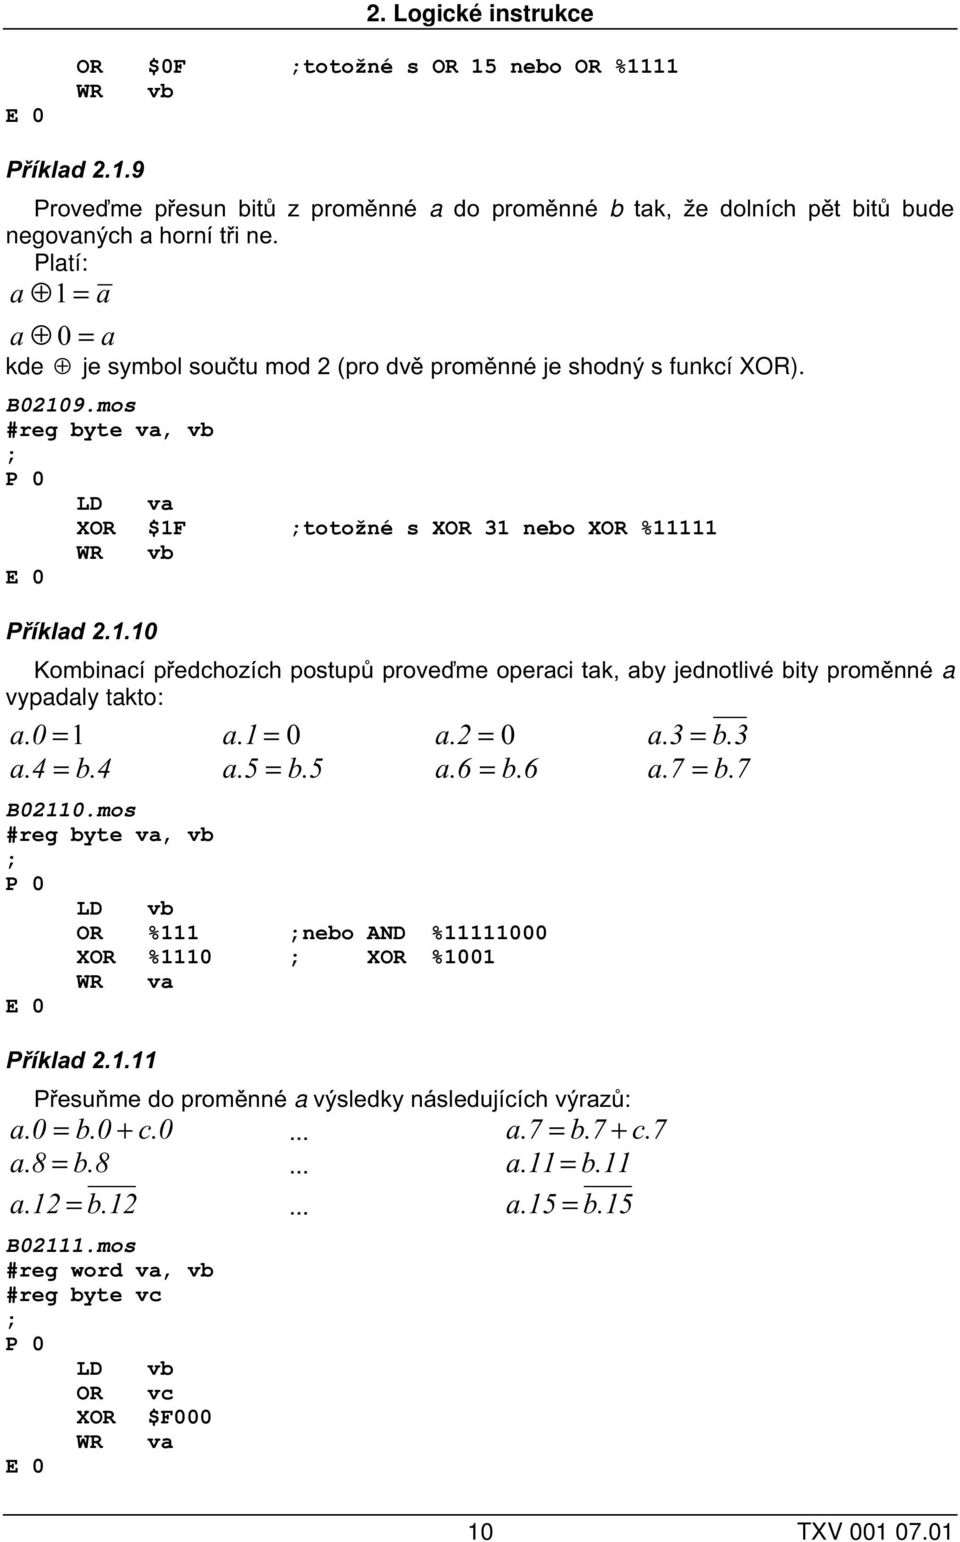 0 =1 a.1 = 0 a.2 = 0 a.3 = b.3 a.4 = b.4 a.5 = b.5 a.6 = b.6 a.7 = b.7 B02110.mos #reg byte va, vb LD vb OR %111 nebo AND %11111000 XOR %1110 XOR %1001 WR va Příklad 2.1.11 Přesuňme do proměnné a výsledky následujících výrazů: a.